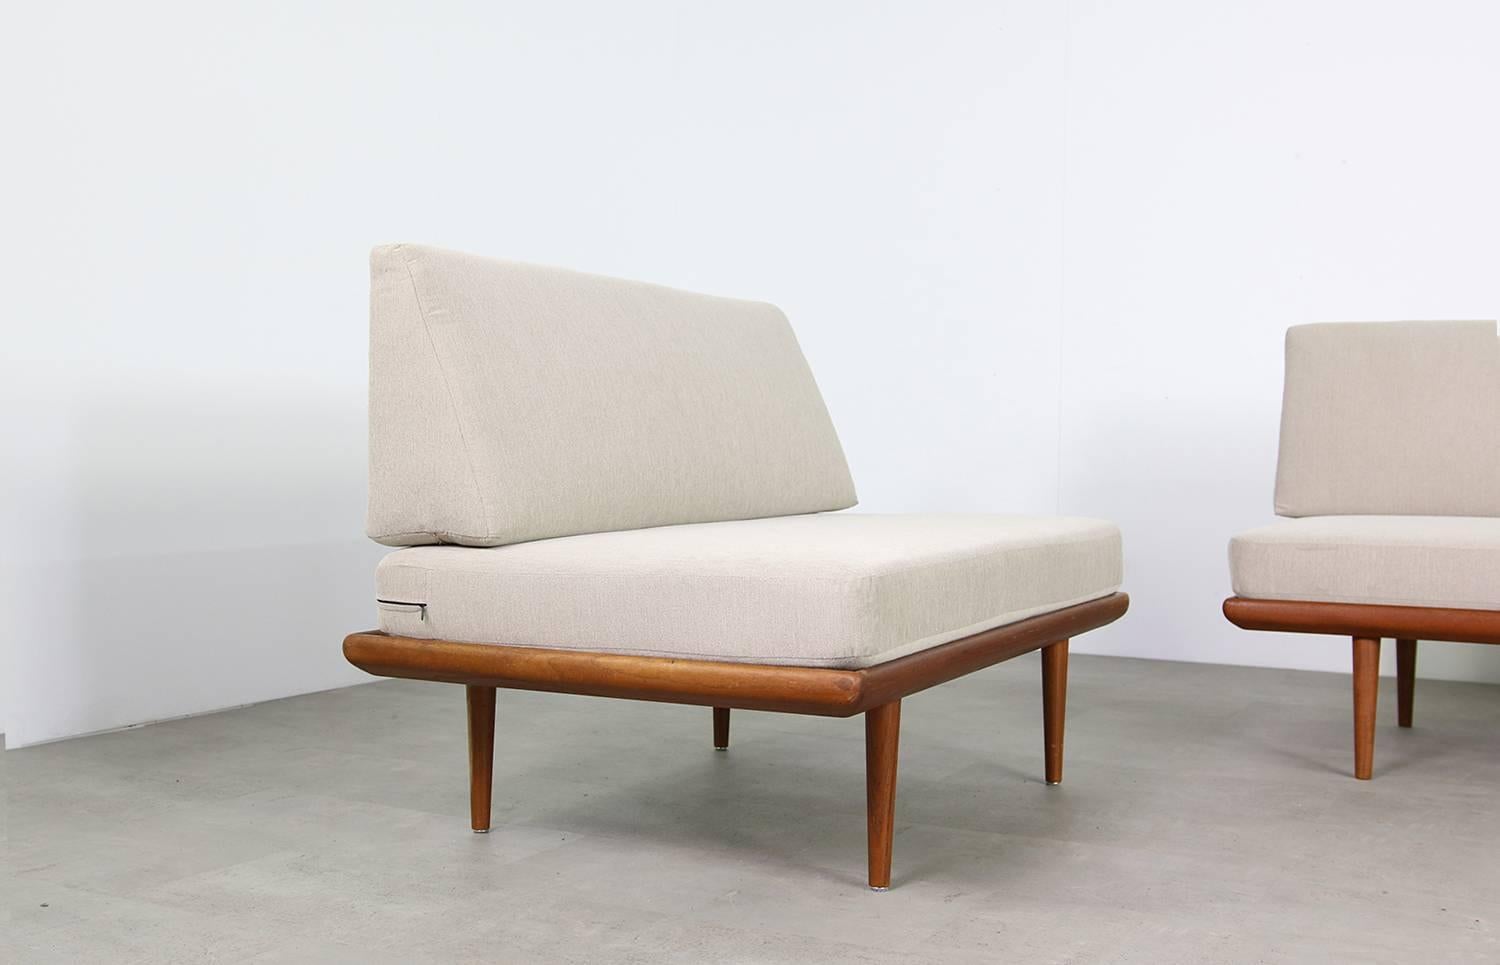 1960s Teak Daybed Sofa Set Peter Hvidt Minerva Danish Modern Design 2